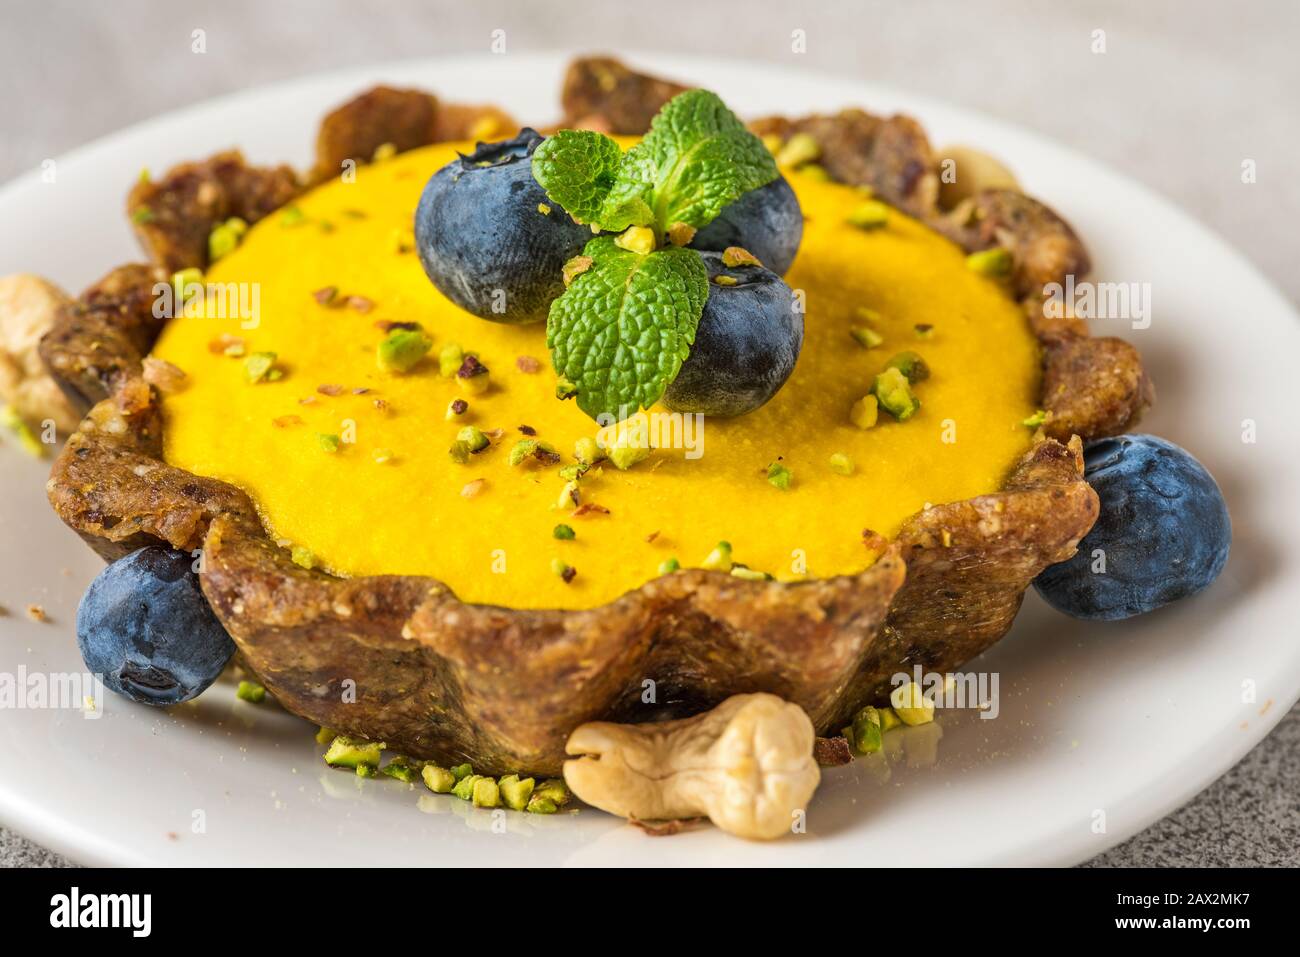 Cheesecake à la mangue brute végétalienne avec bleuets frais, menthe et pistaches. Concept de nourriture sans gluten végétalien sain. Gros plan Banque D'Images